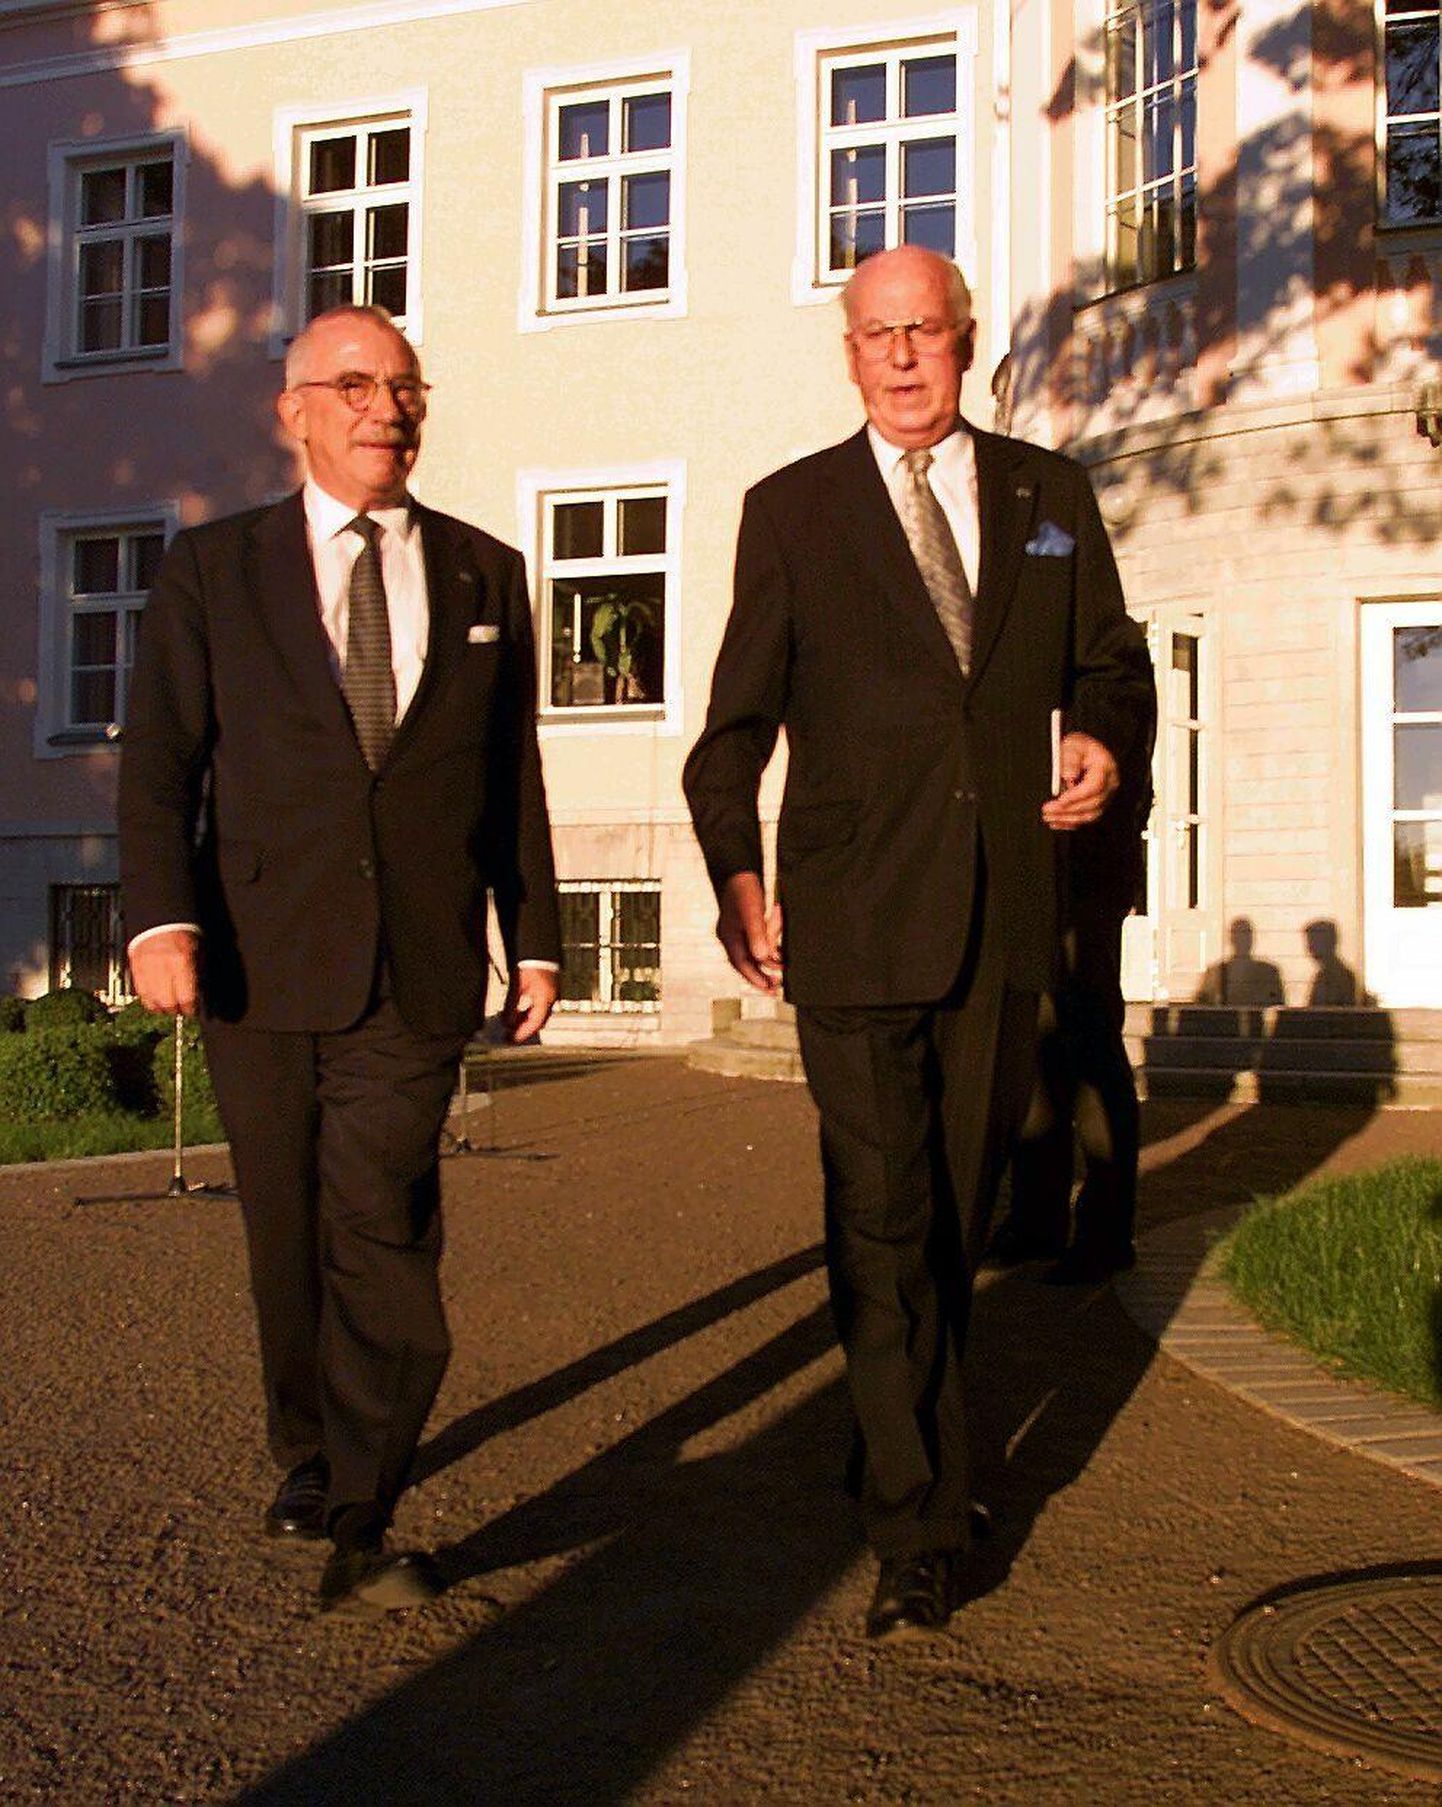 Lennart Meri vastuvõtt Kadriorus taasiseseisvumise puhul. Pildil on Lennart Meri ja Uffe Ellemann-Jensen.